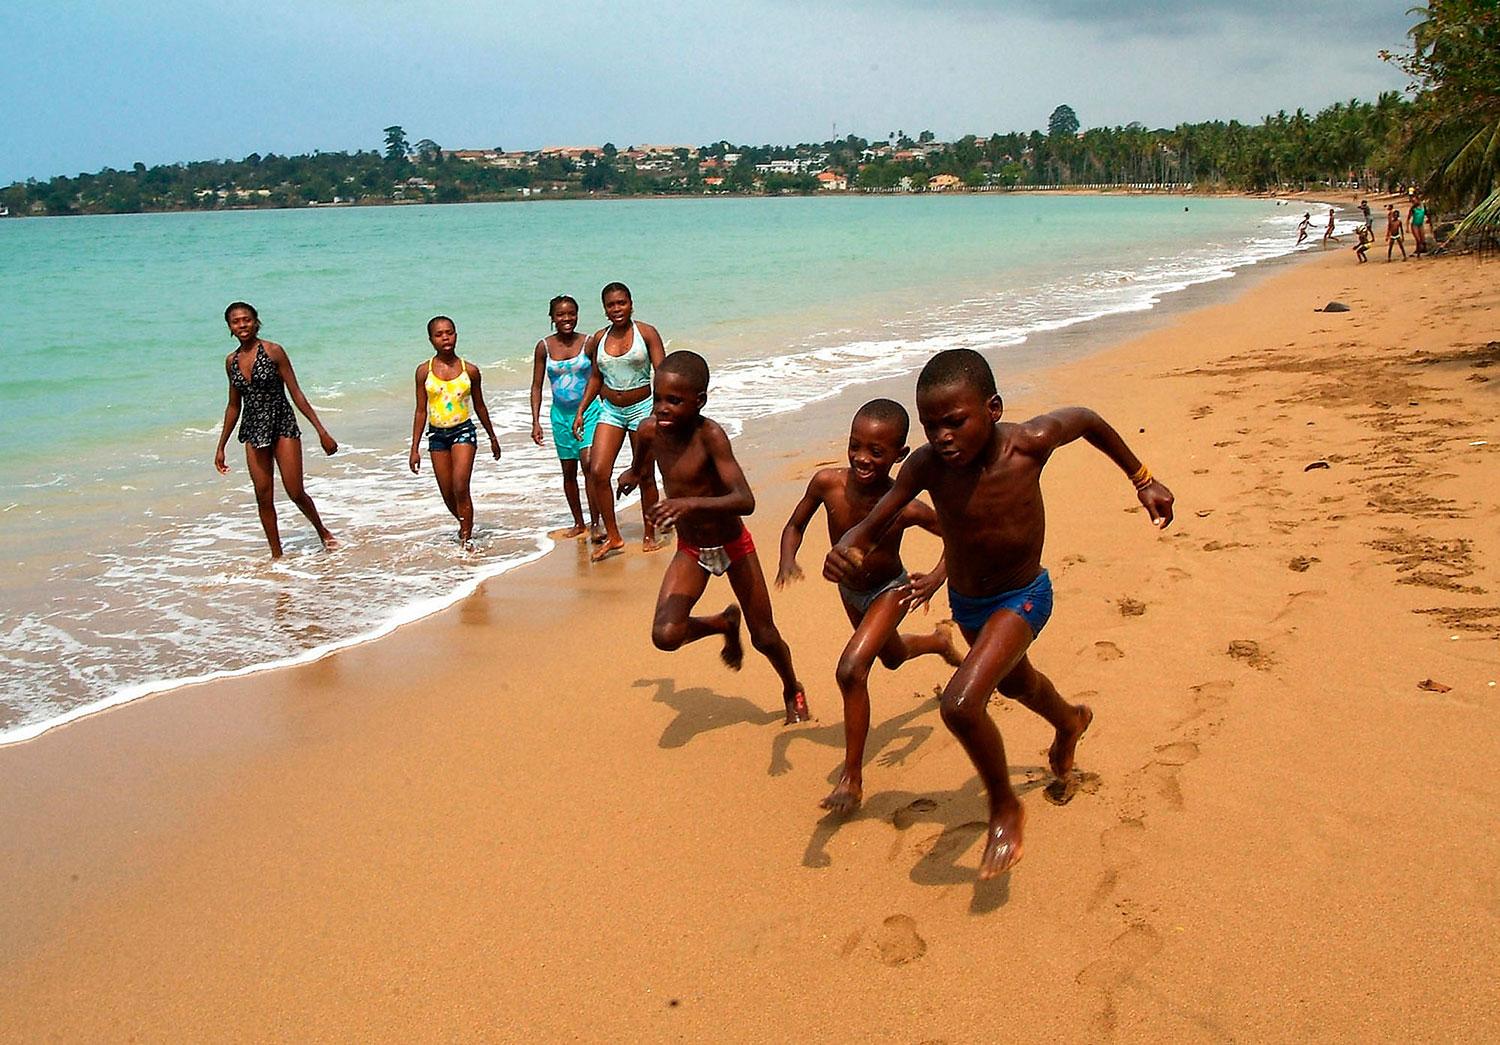 4. SAO TOME & PRINCIPE Barn leker på stranden i Sao Tome & Principe, i höjd med ekvatorn utanför Afrikas västkust.